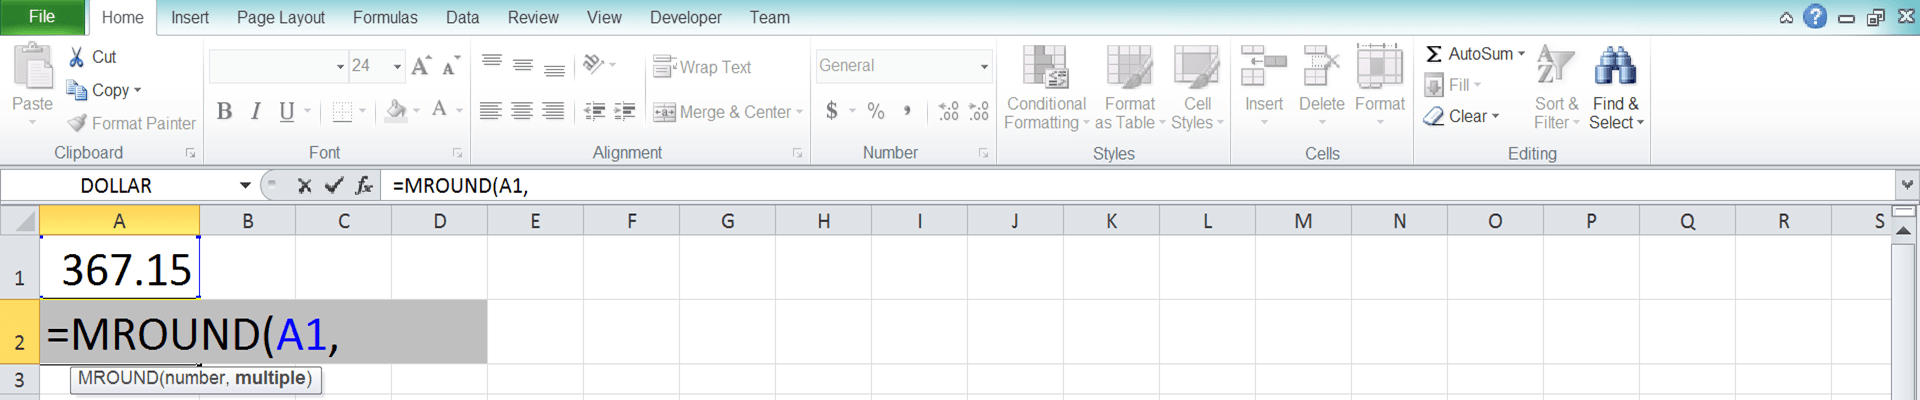 Cara Menggunakan Rumus MROUND Excel: Fungsi, Contoh, dan Langkah Penulisan - Screenshot Langkah 3